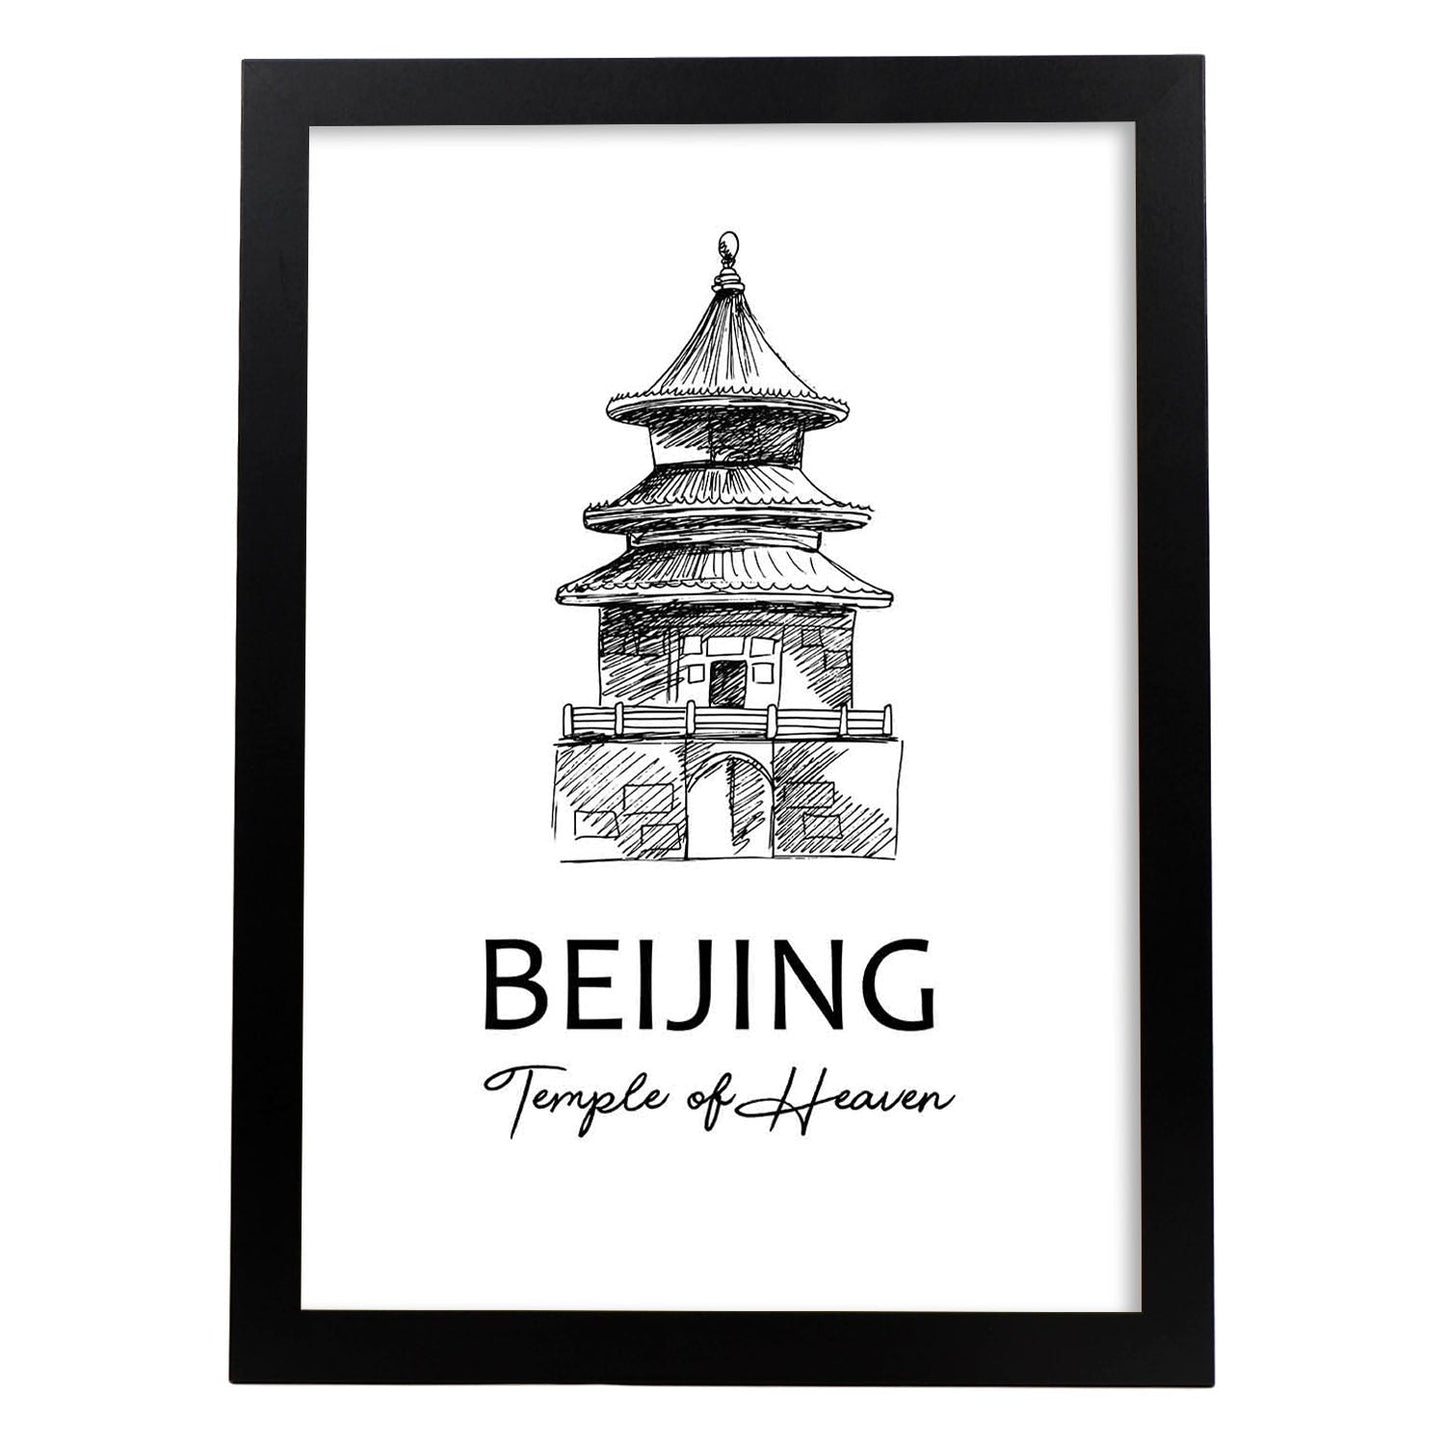 Poster de Beijing - Templo del cielo. Láminas con monumentos de ciudades.-Artwork-Nacnic-A3-Marco Negro-Nacnic Estudio SL